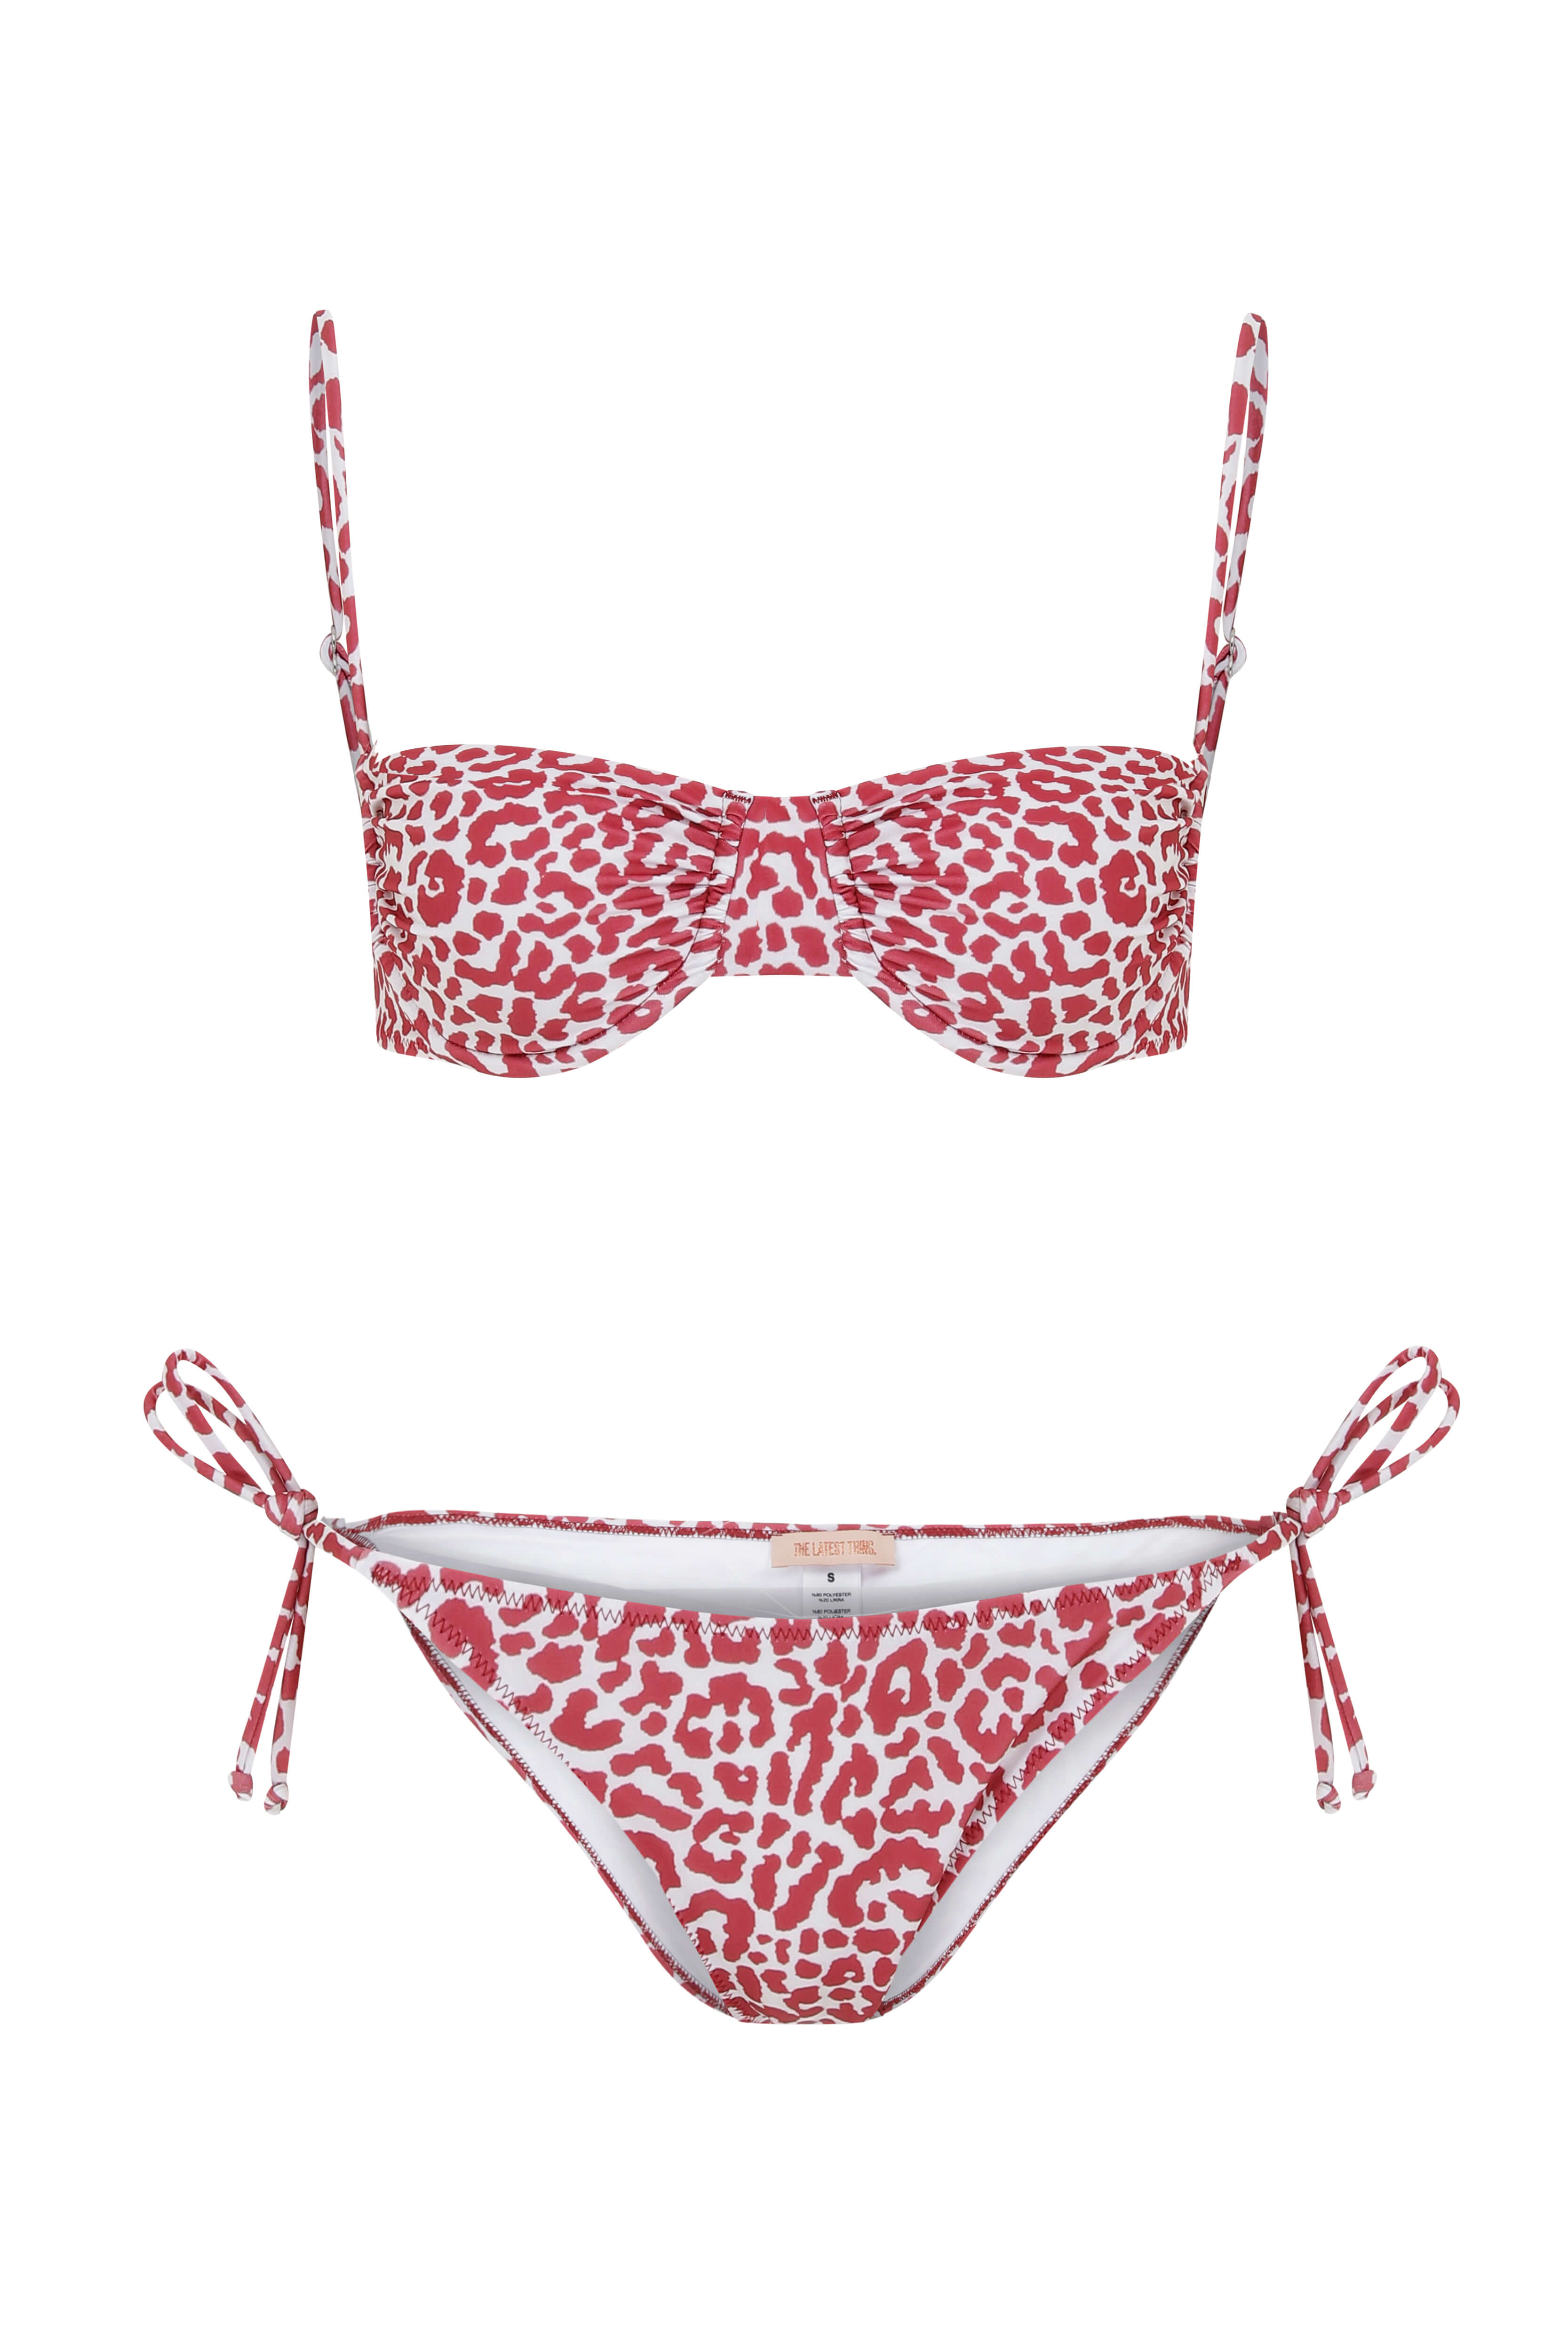 ENYA Leopard Patterned Underwire Bikini Set